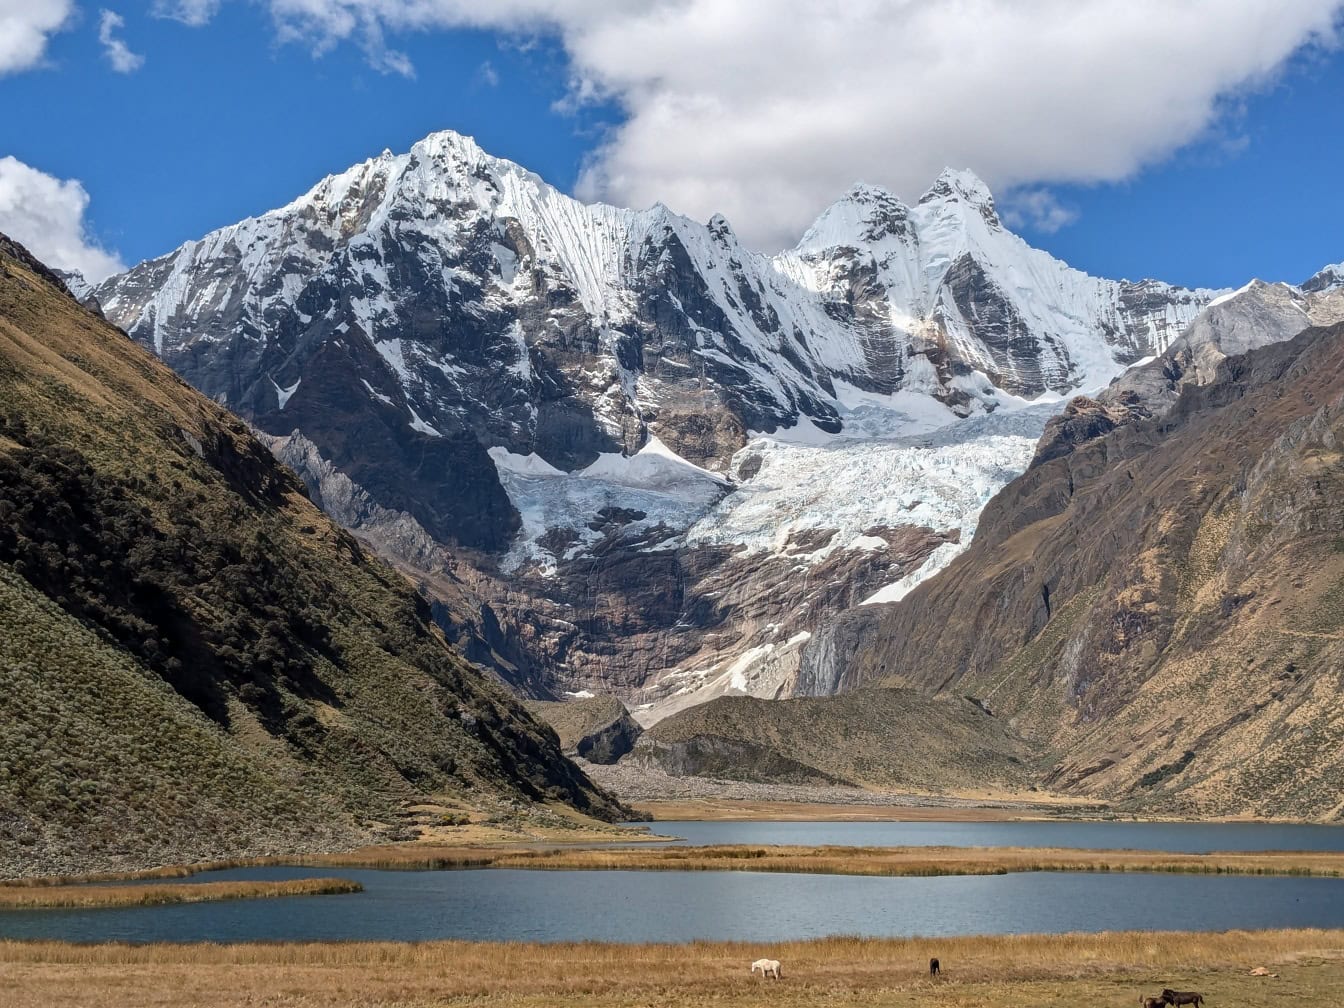 Lac dans une vallée avec des montagnes enneigées à Cordillère Huayhuash, une chaîne de montagnes dans les Andes au Pérou